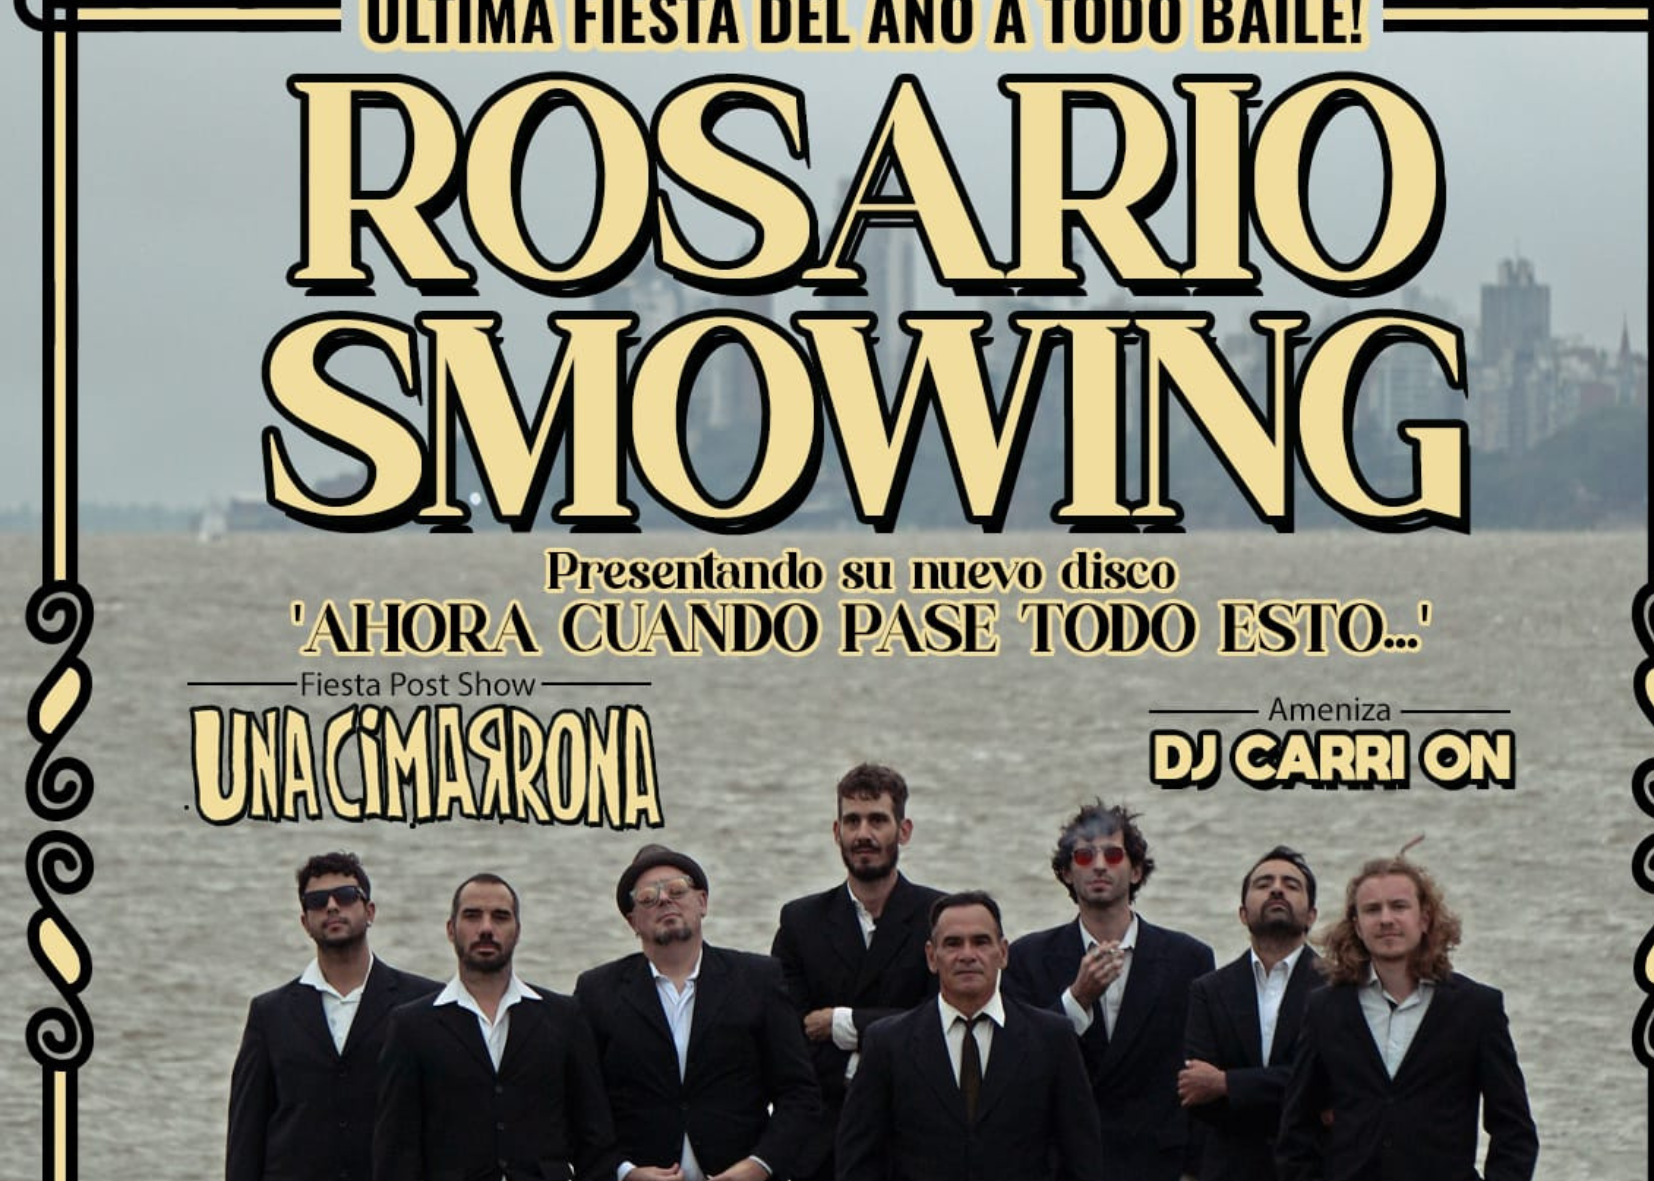 ROSARIO SMOWING presenta nuevo disco